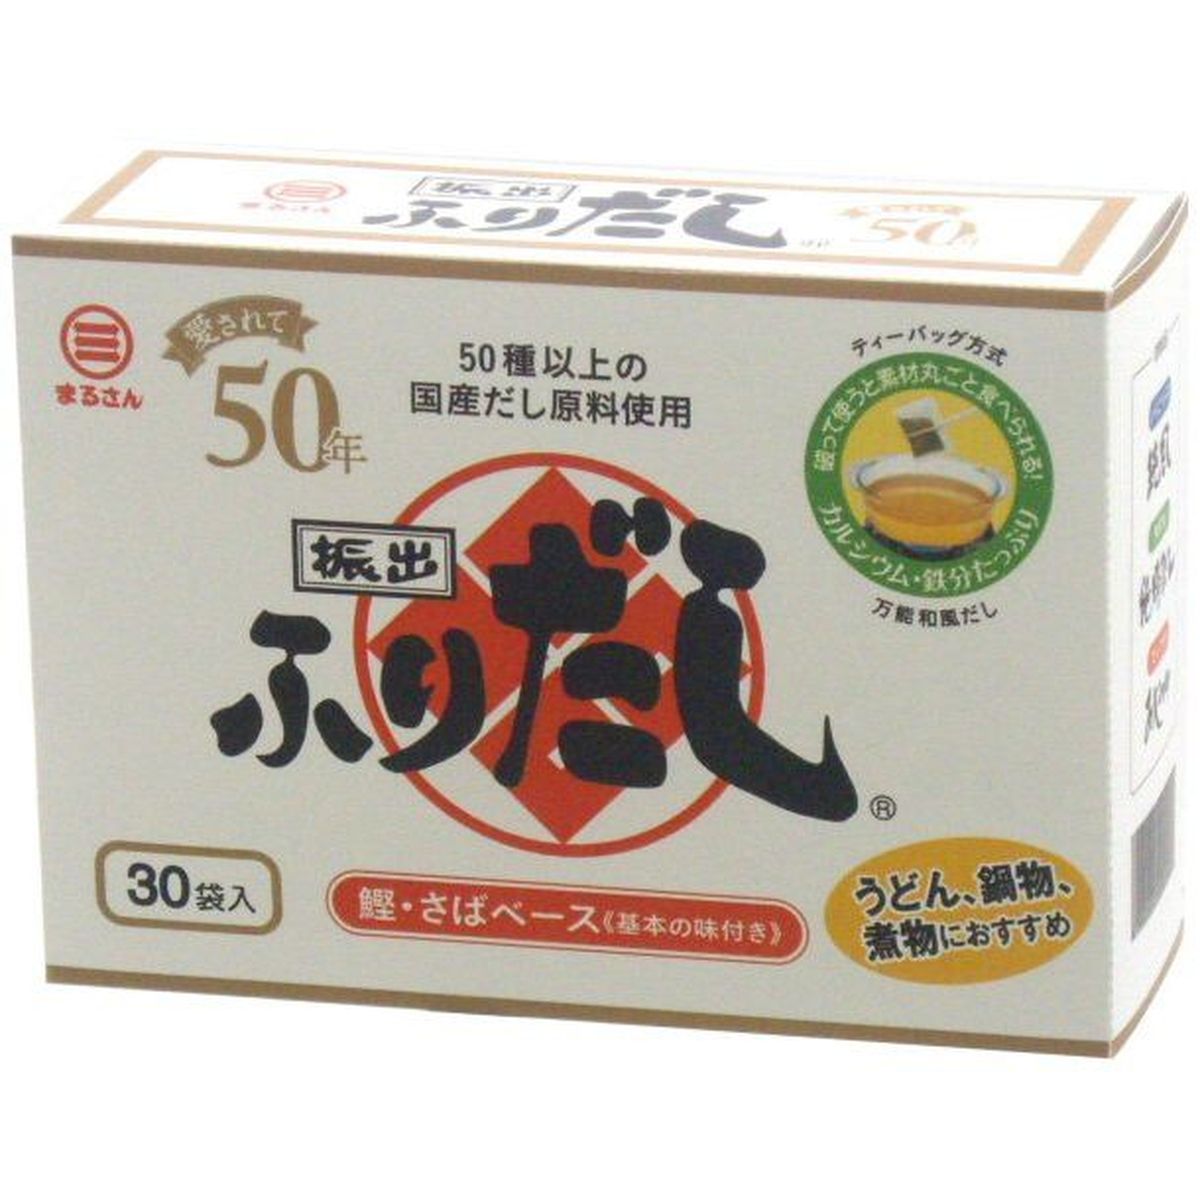 【40個入リ】丸三食品 フリダシ 箱 8gX30袋